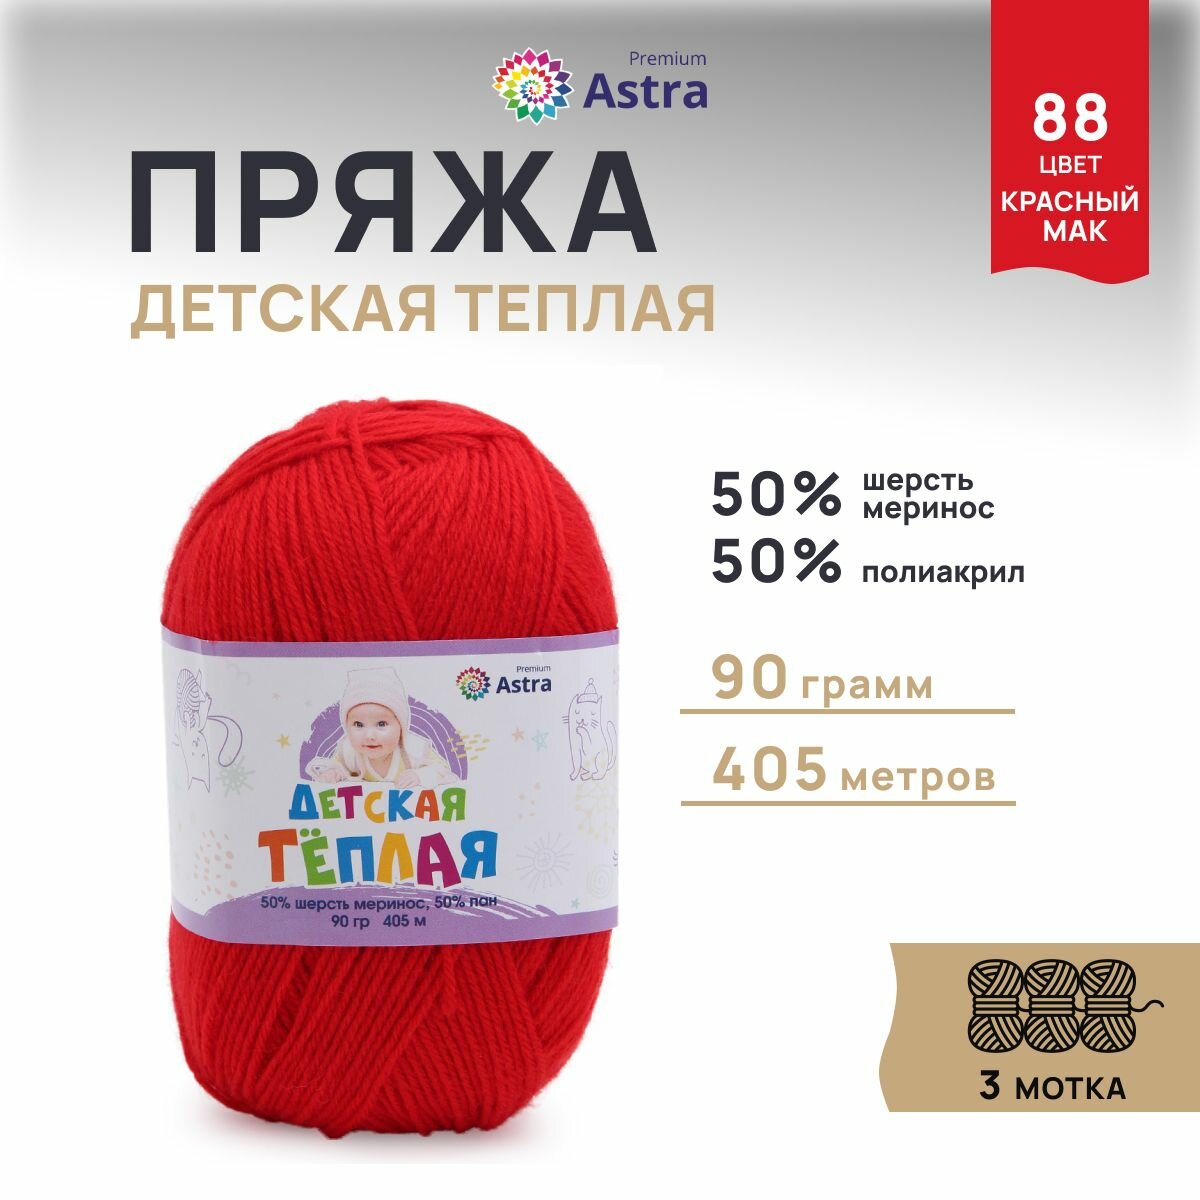 Пряжа для вязания Astra Premium 'Детская теплая', 90г, 405м (50% шерсть меринос, 50% пан) (88 красный мак), 3 мотка